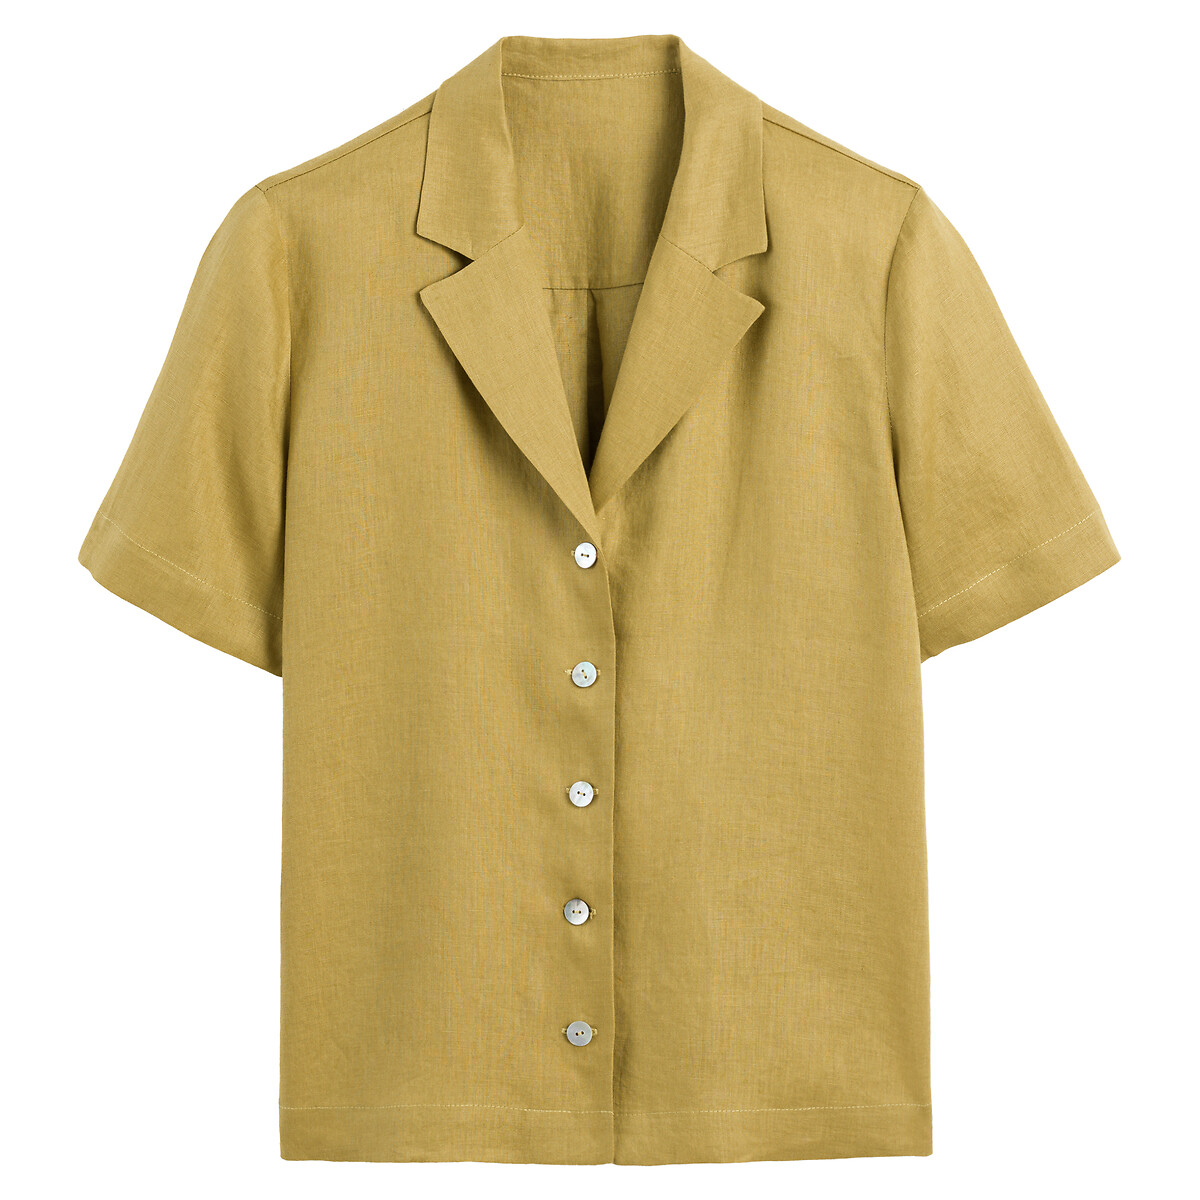 Рубашка Из льна с воротником-стойкой короткие рукава 40 (FR) - 46 (RUS) зеленый LaRedoute, размер 40 (FR) - 46 (RUS) Рубашка Из льна с воротником-стойкой короткие рукава 40 (FR) - 46 (RUS) зеленый - фото 5